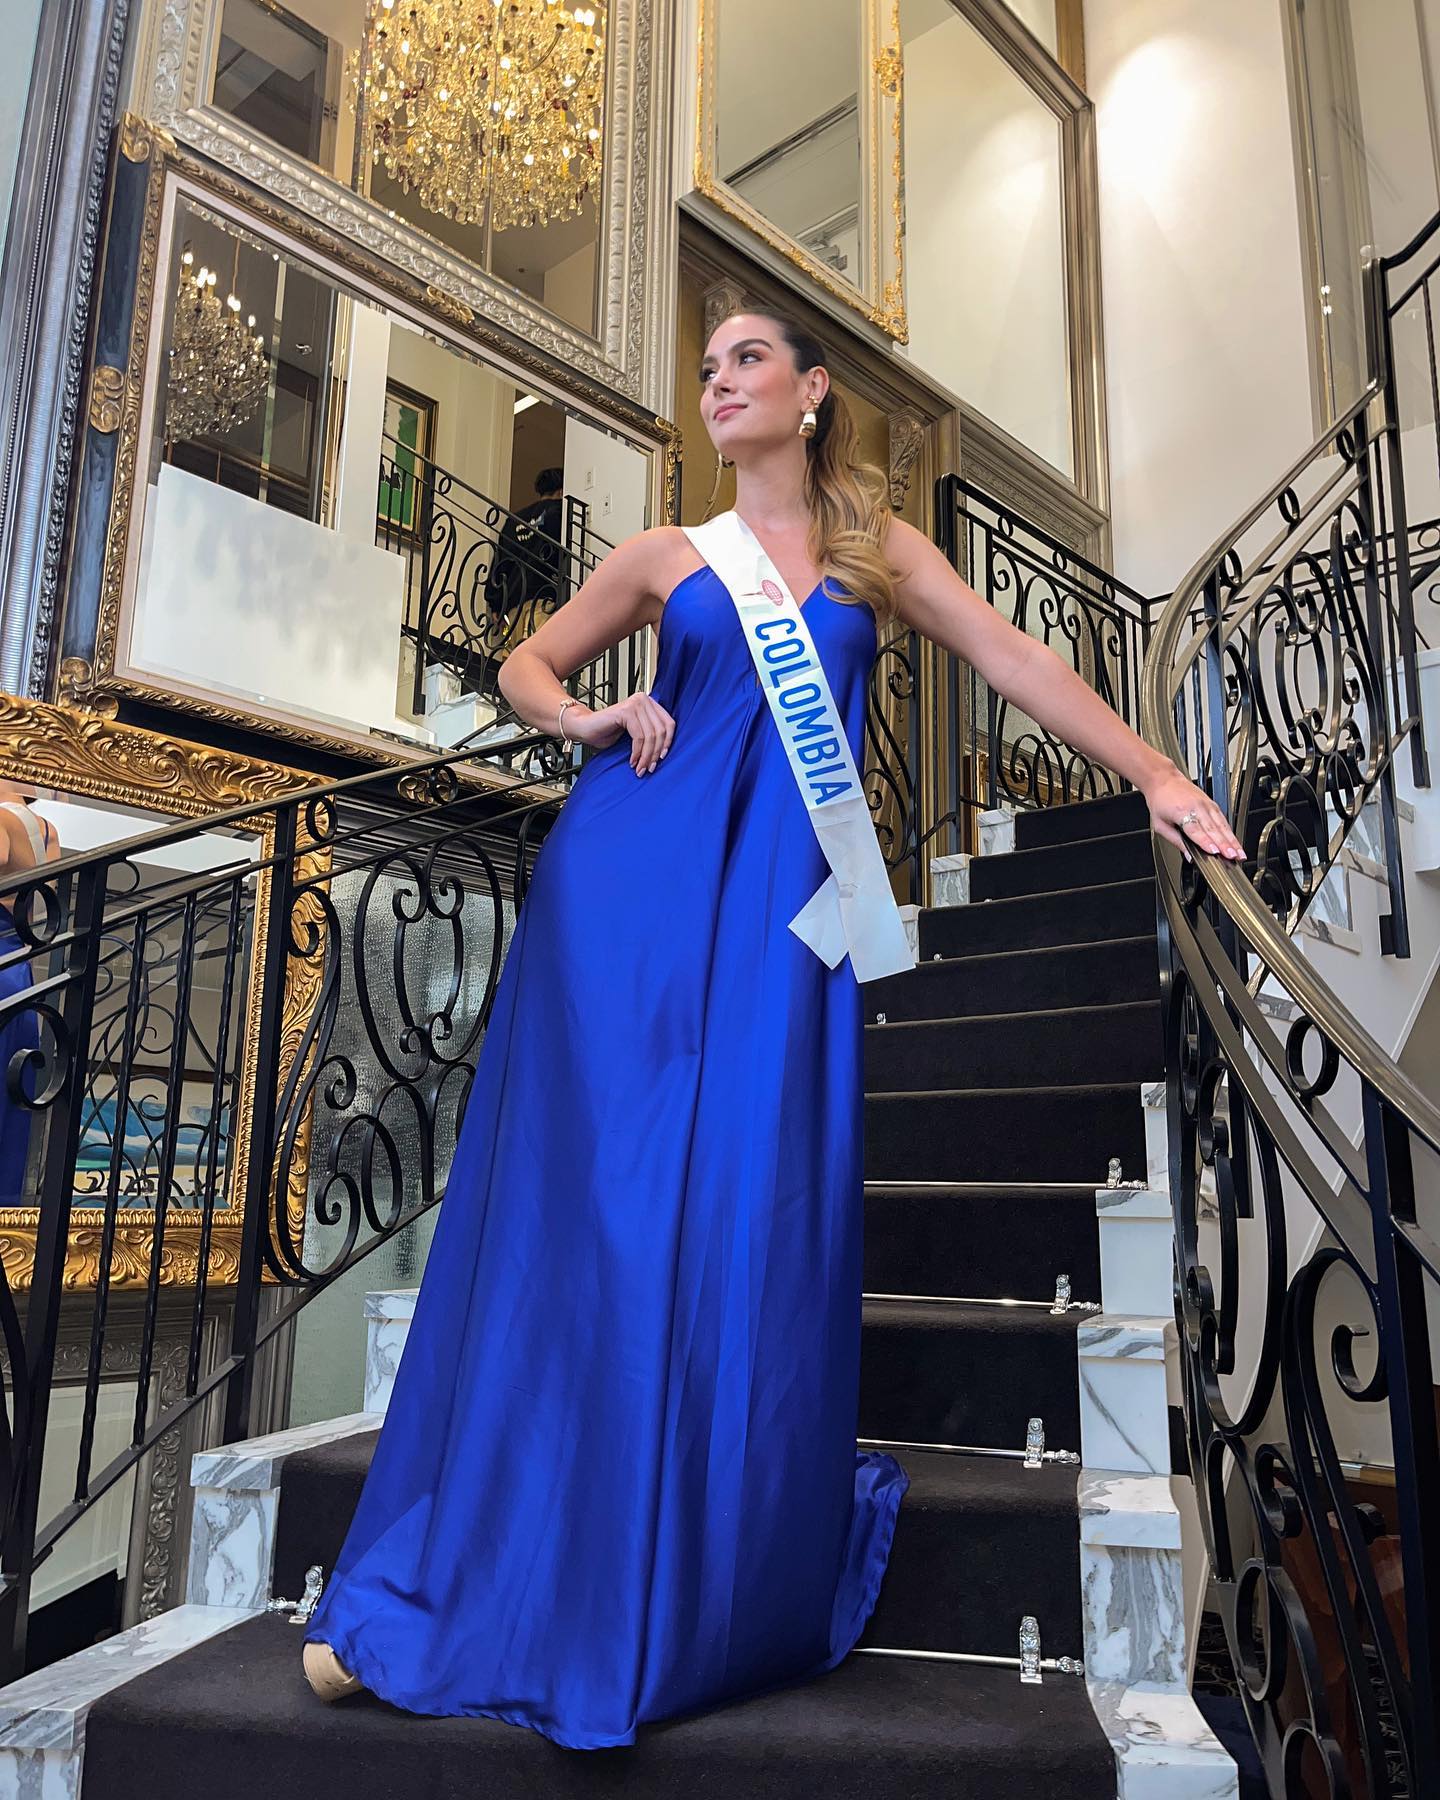 natalia lopez cardona,3rd runner-up de miss international 2022. - Página 3 32346714